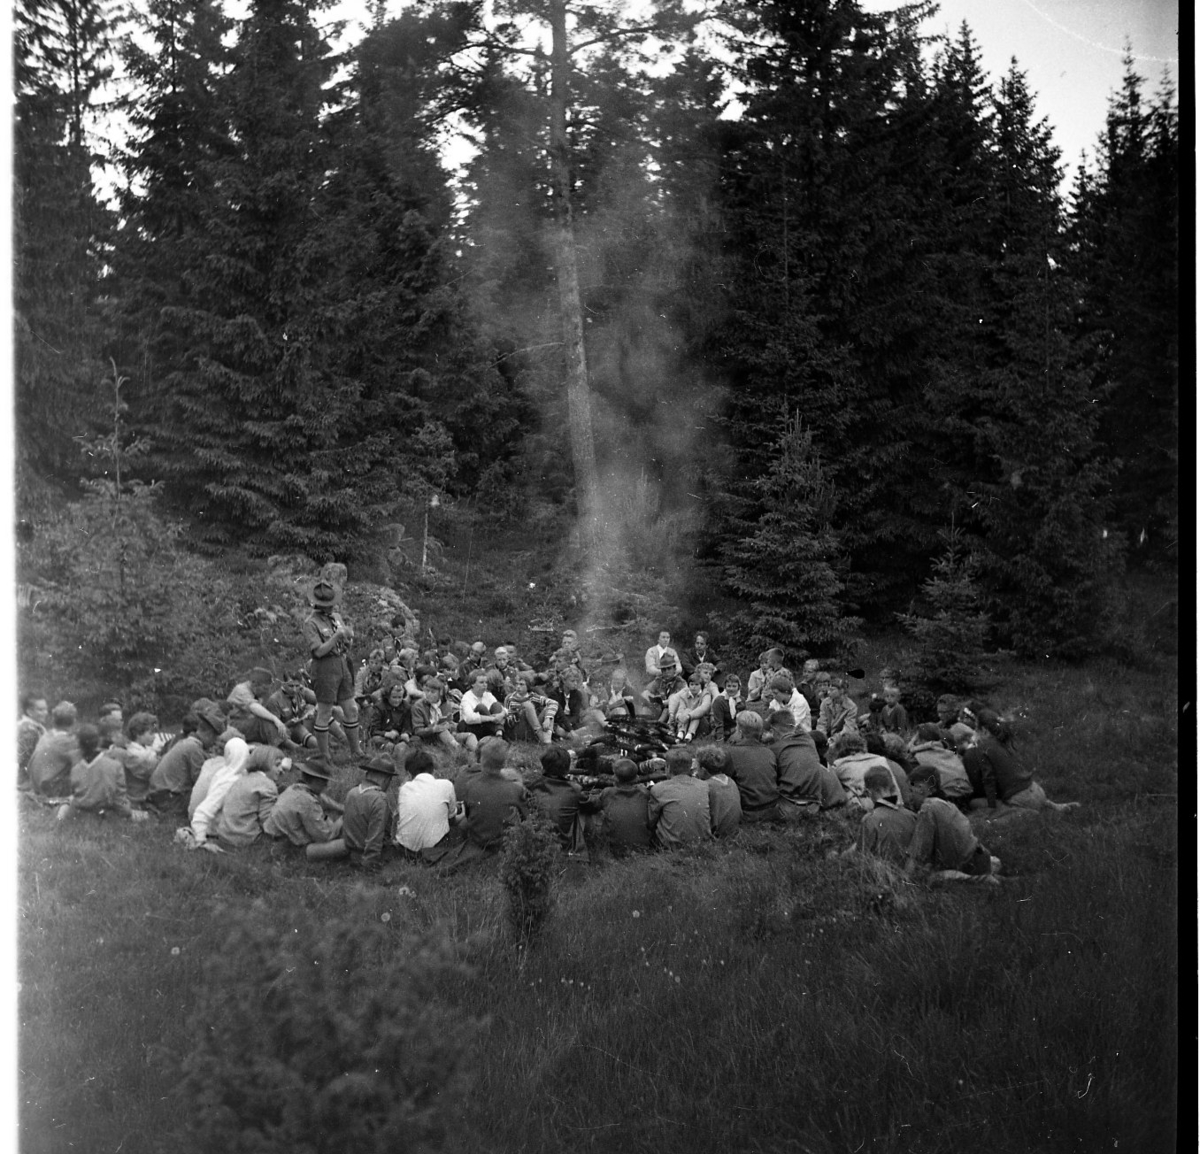 Scouter samlade runt en lägereld, möjligen i Alviken.